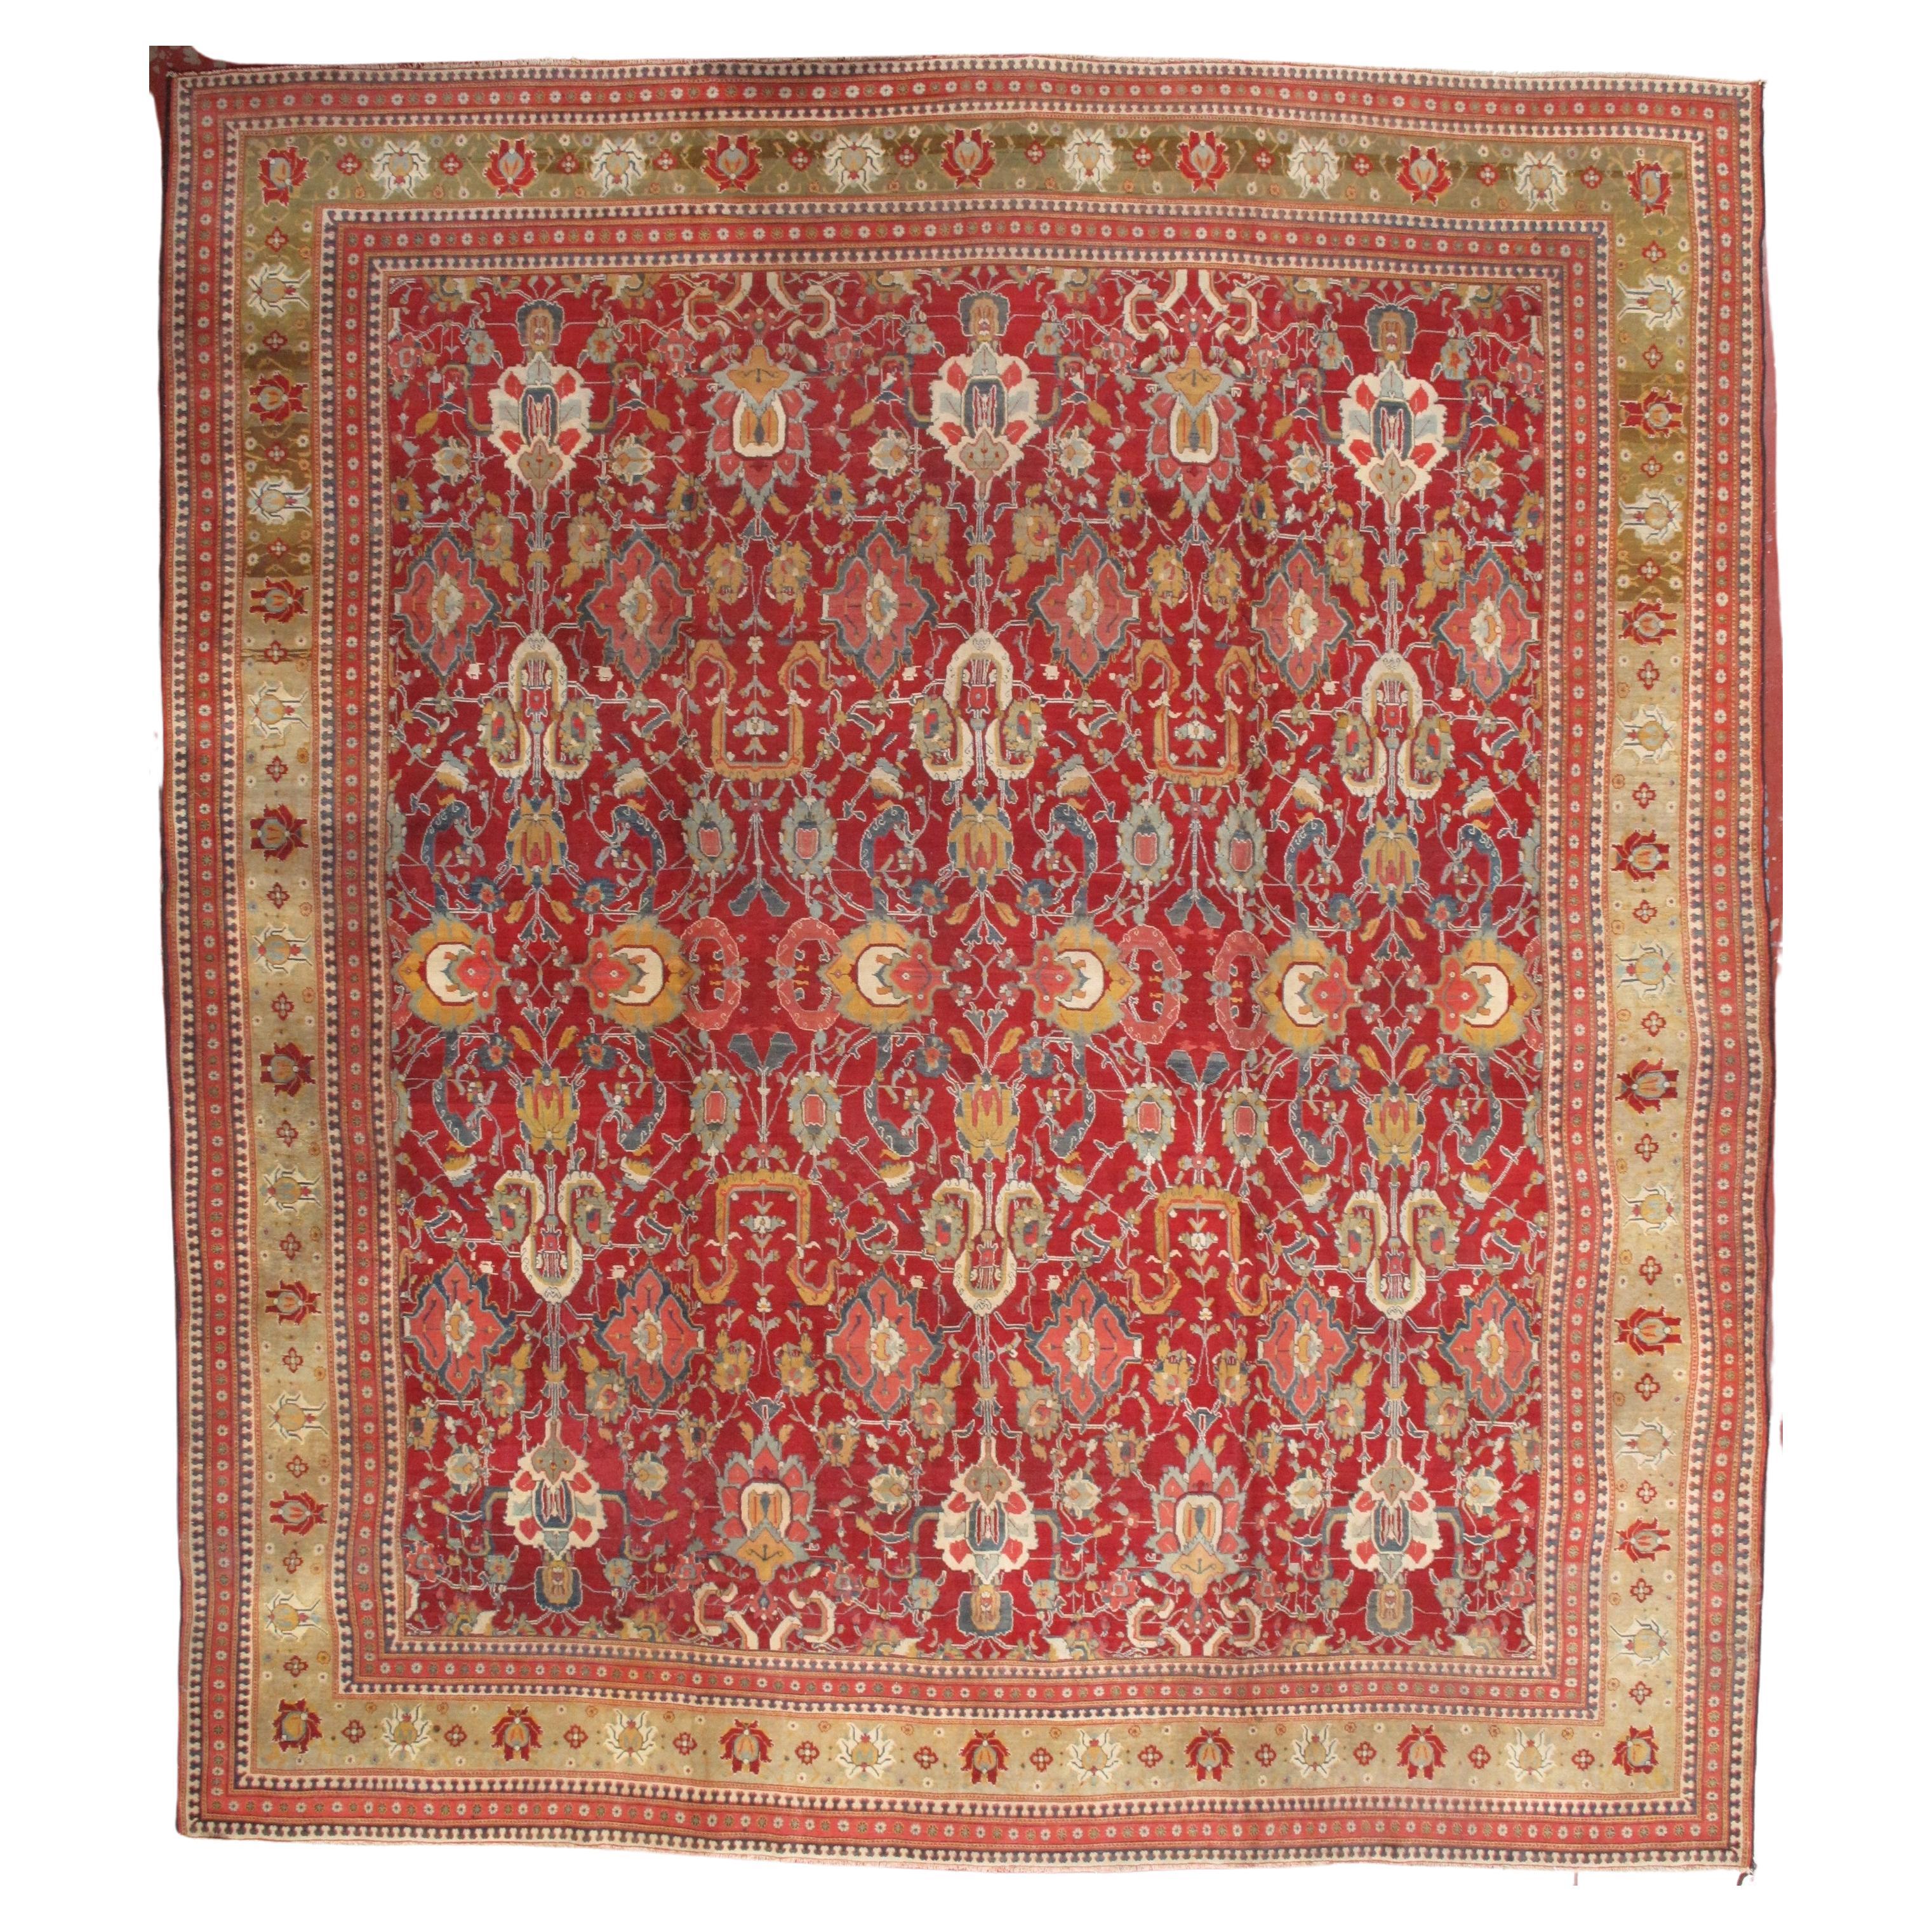 North India, Antique Agra Carpet Circa 1850